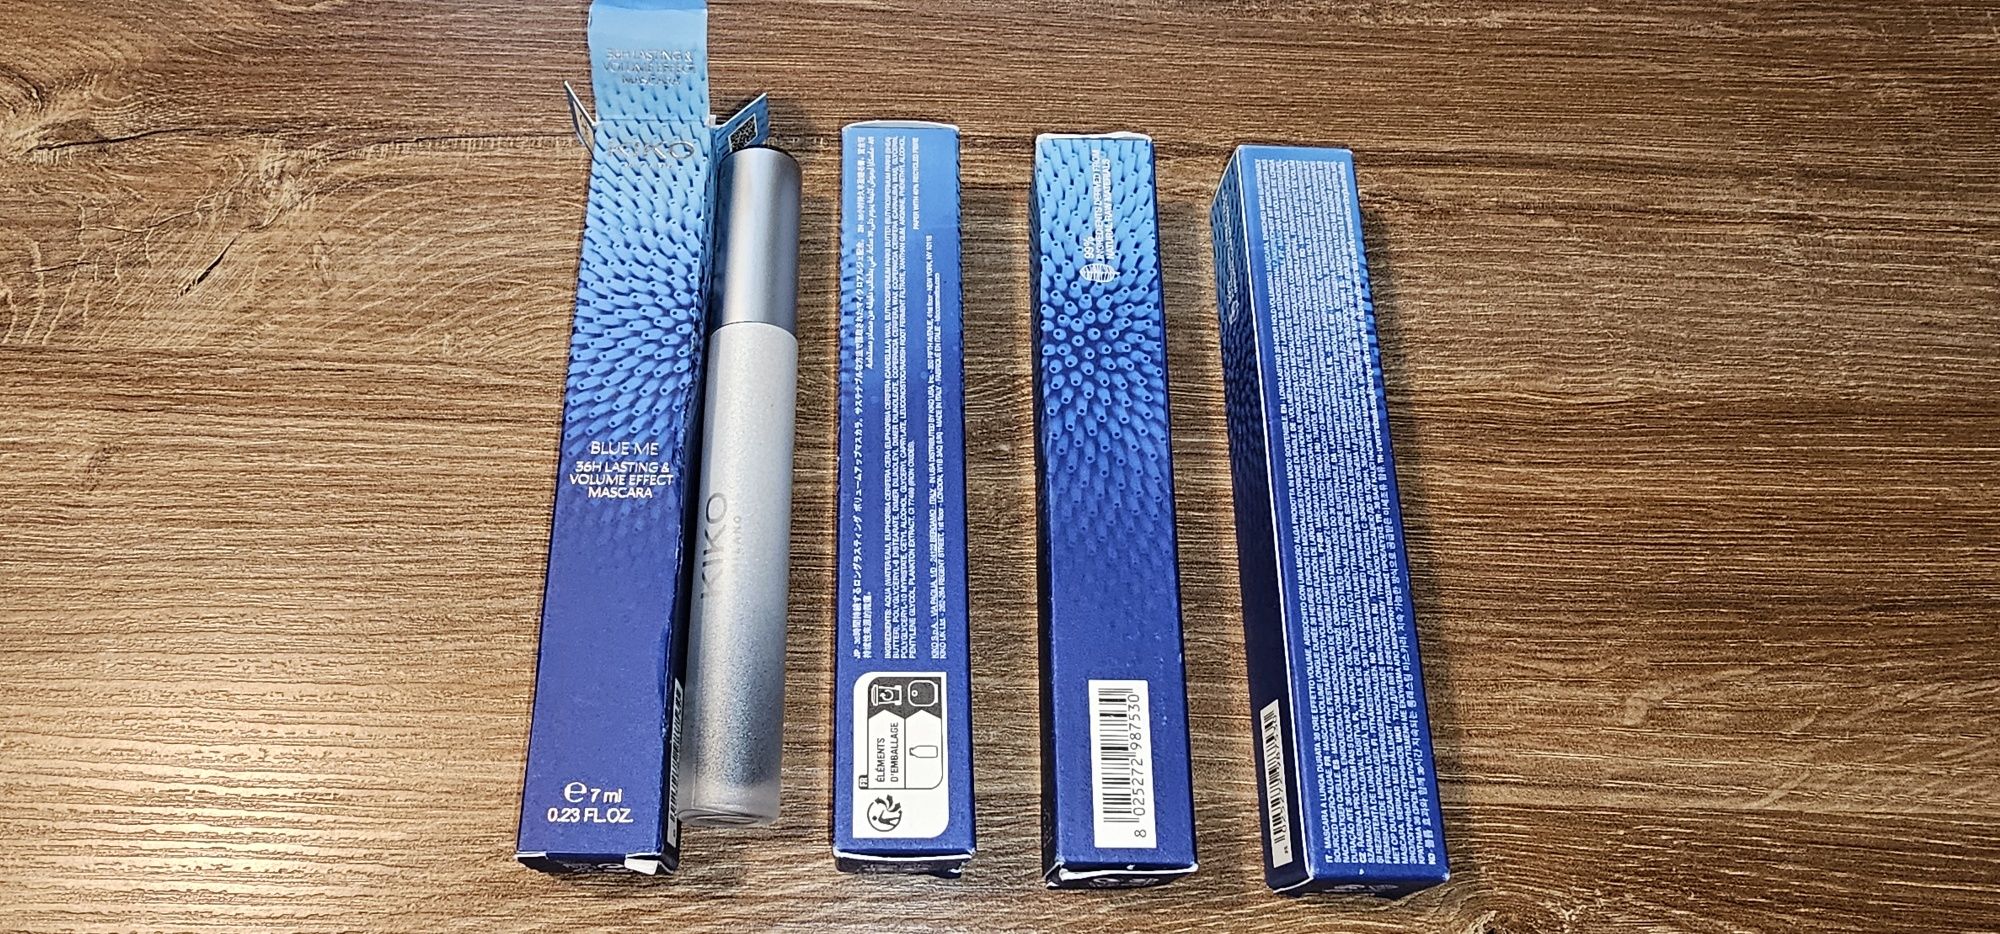 Tusz do rzęs Kiko Milano Blue Me 36h lasting & volume effect mascara